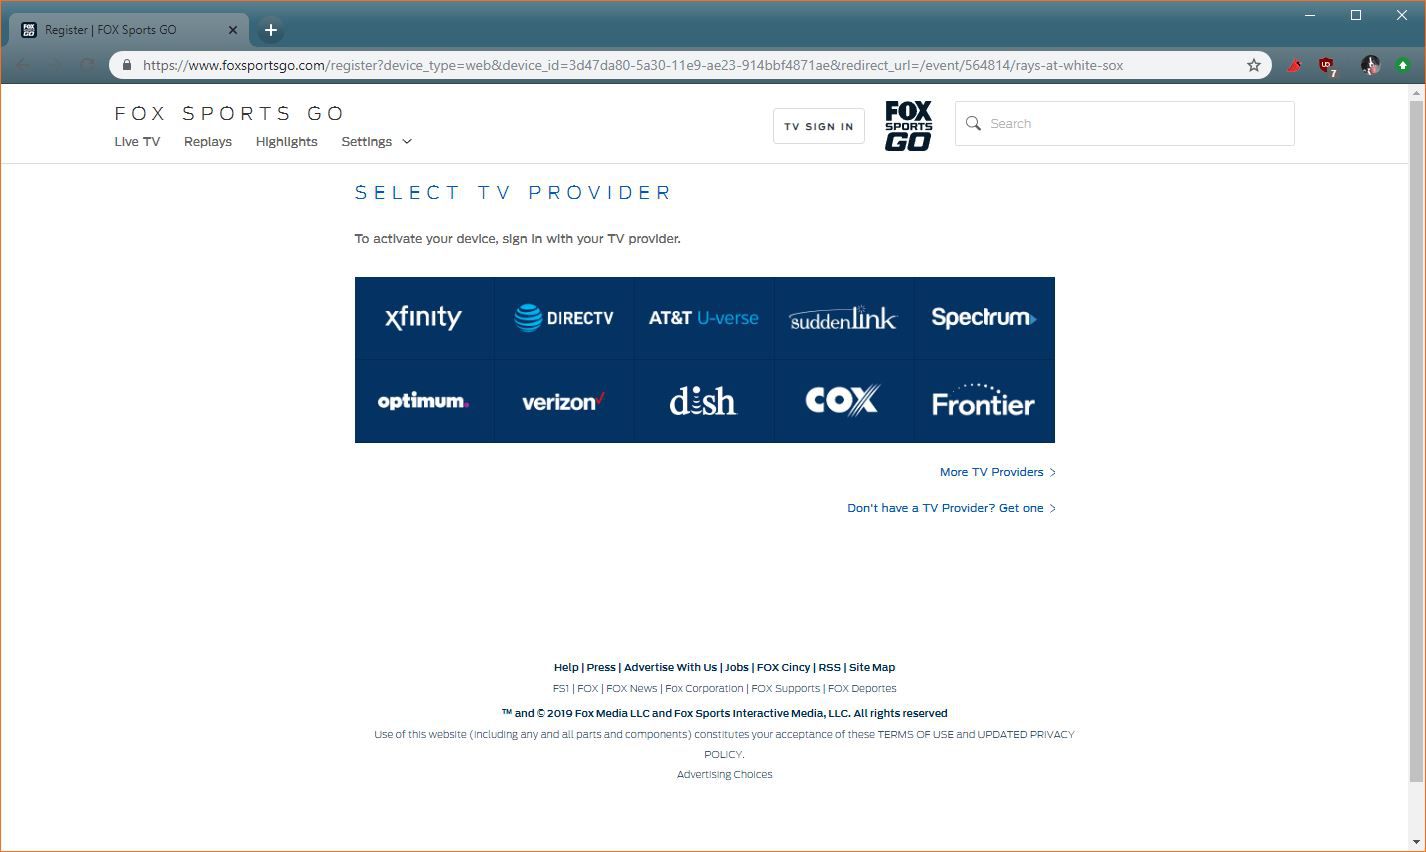 Een screenshot van de FOX Sports GO TV provider selectiesite.